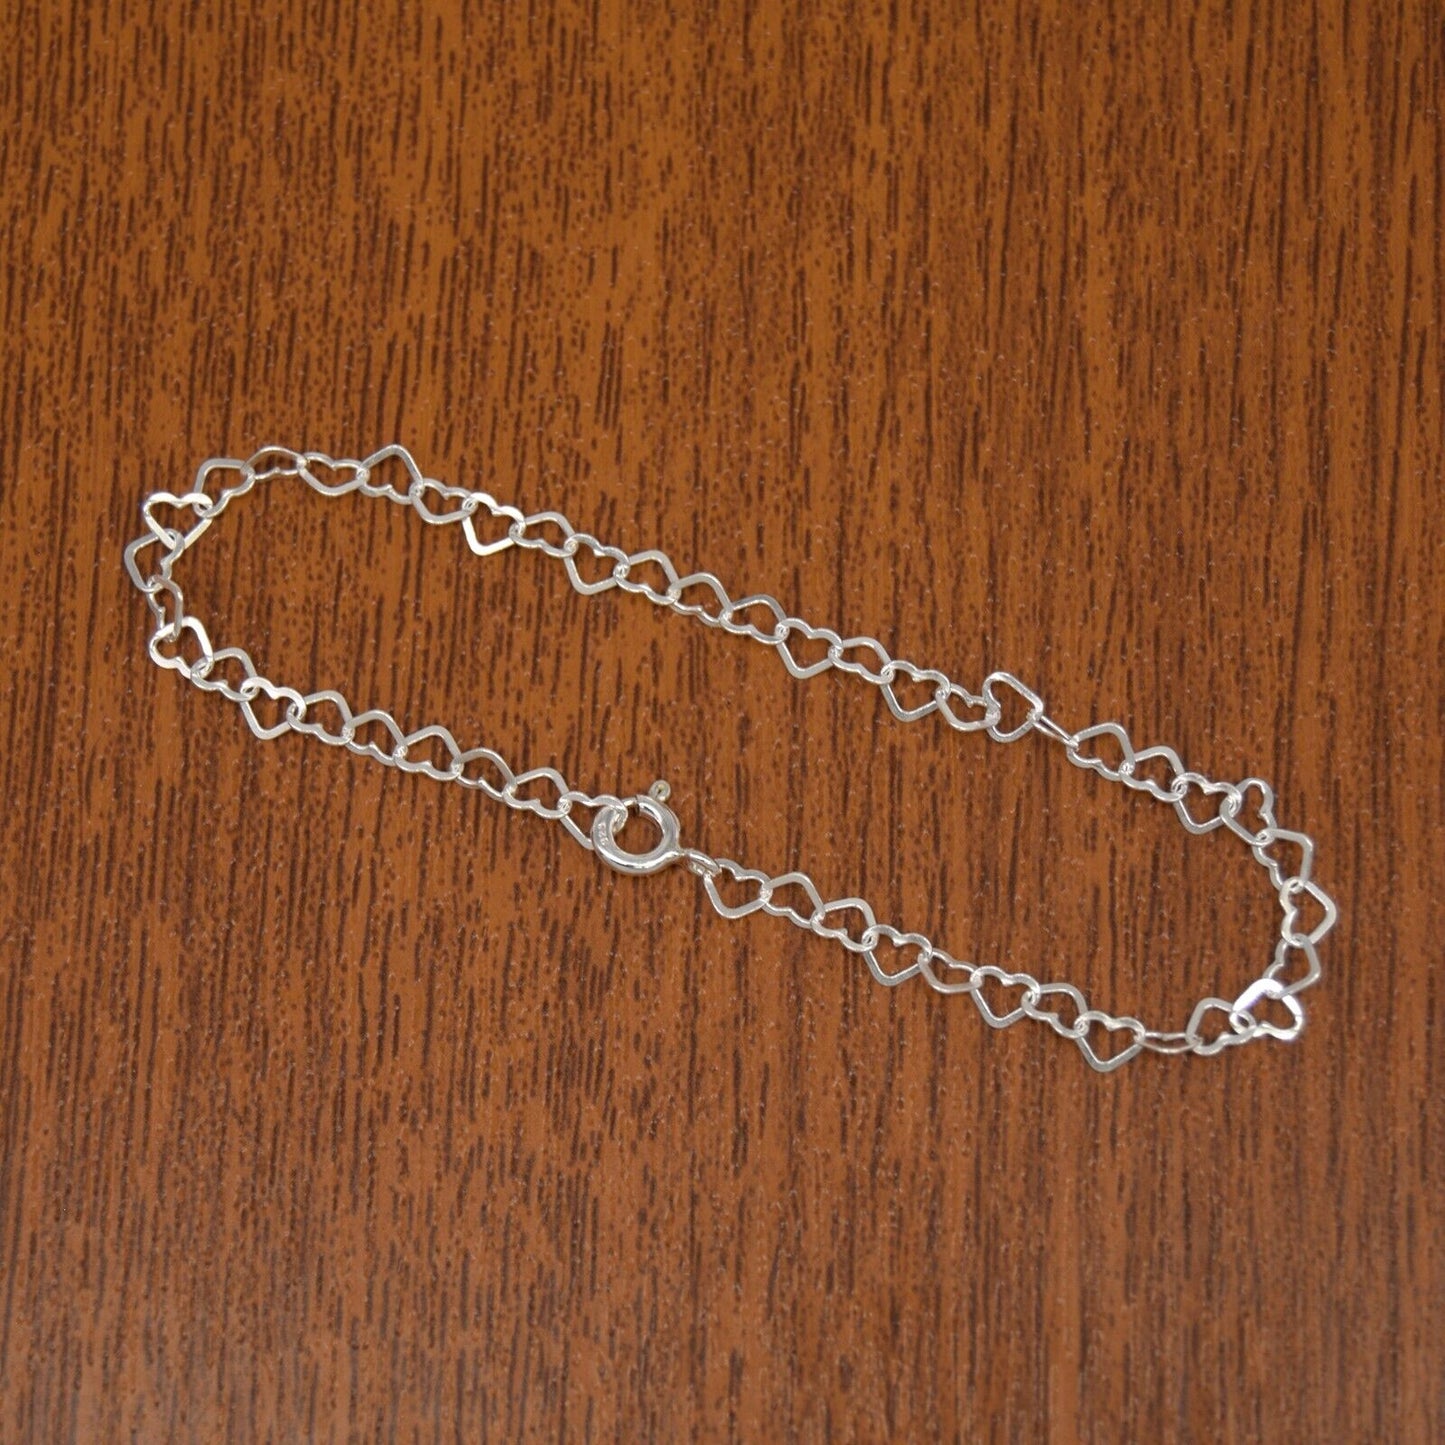 Genuine 925 Sterling Silver Link of Hearts Bracelet